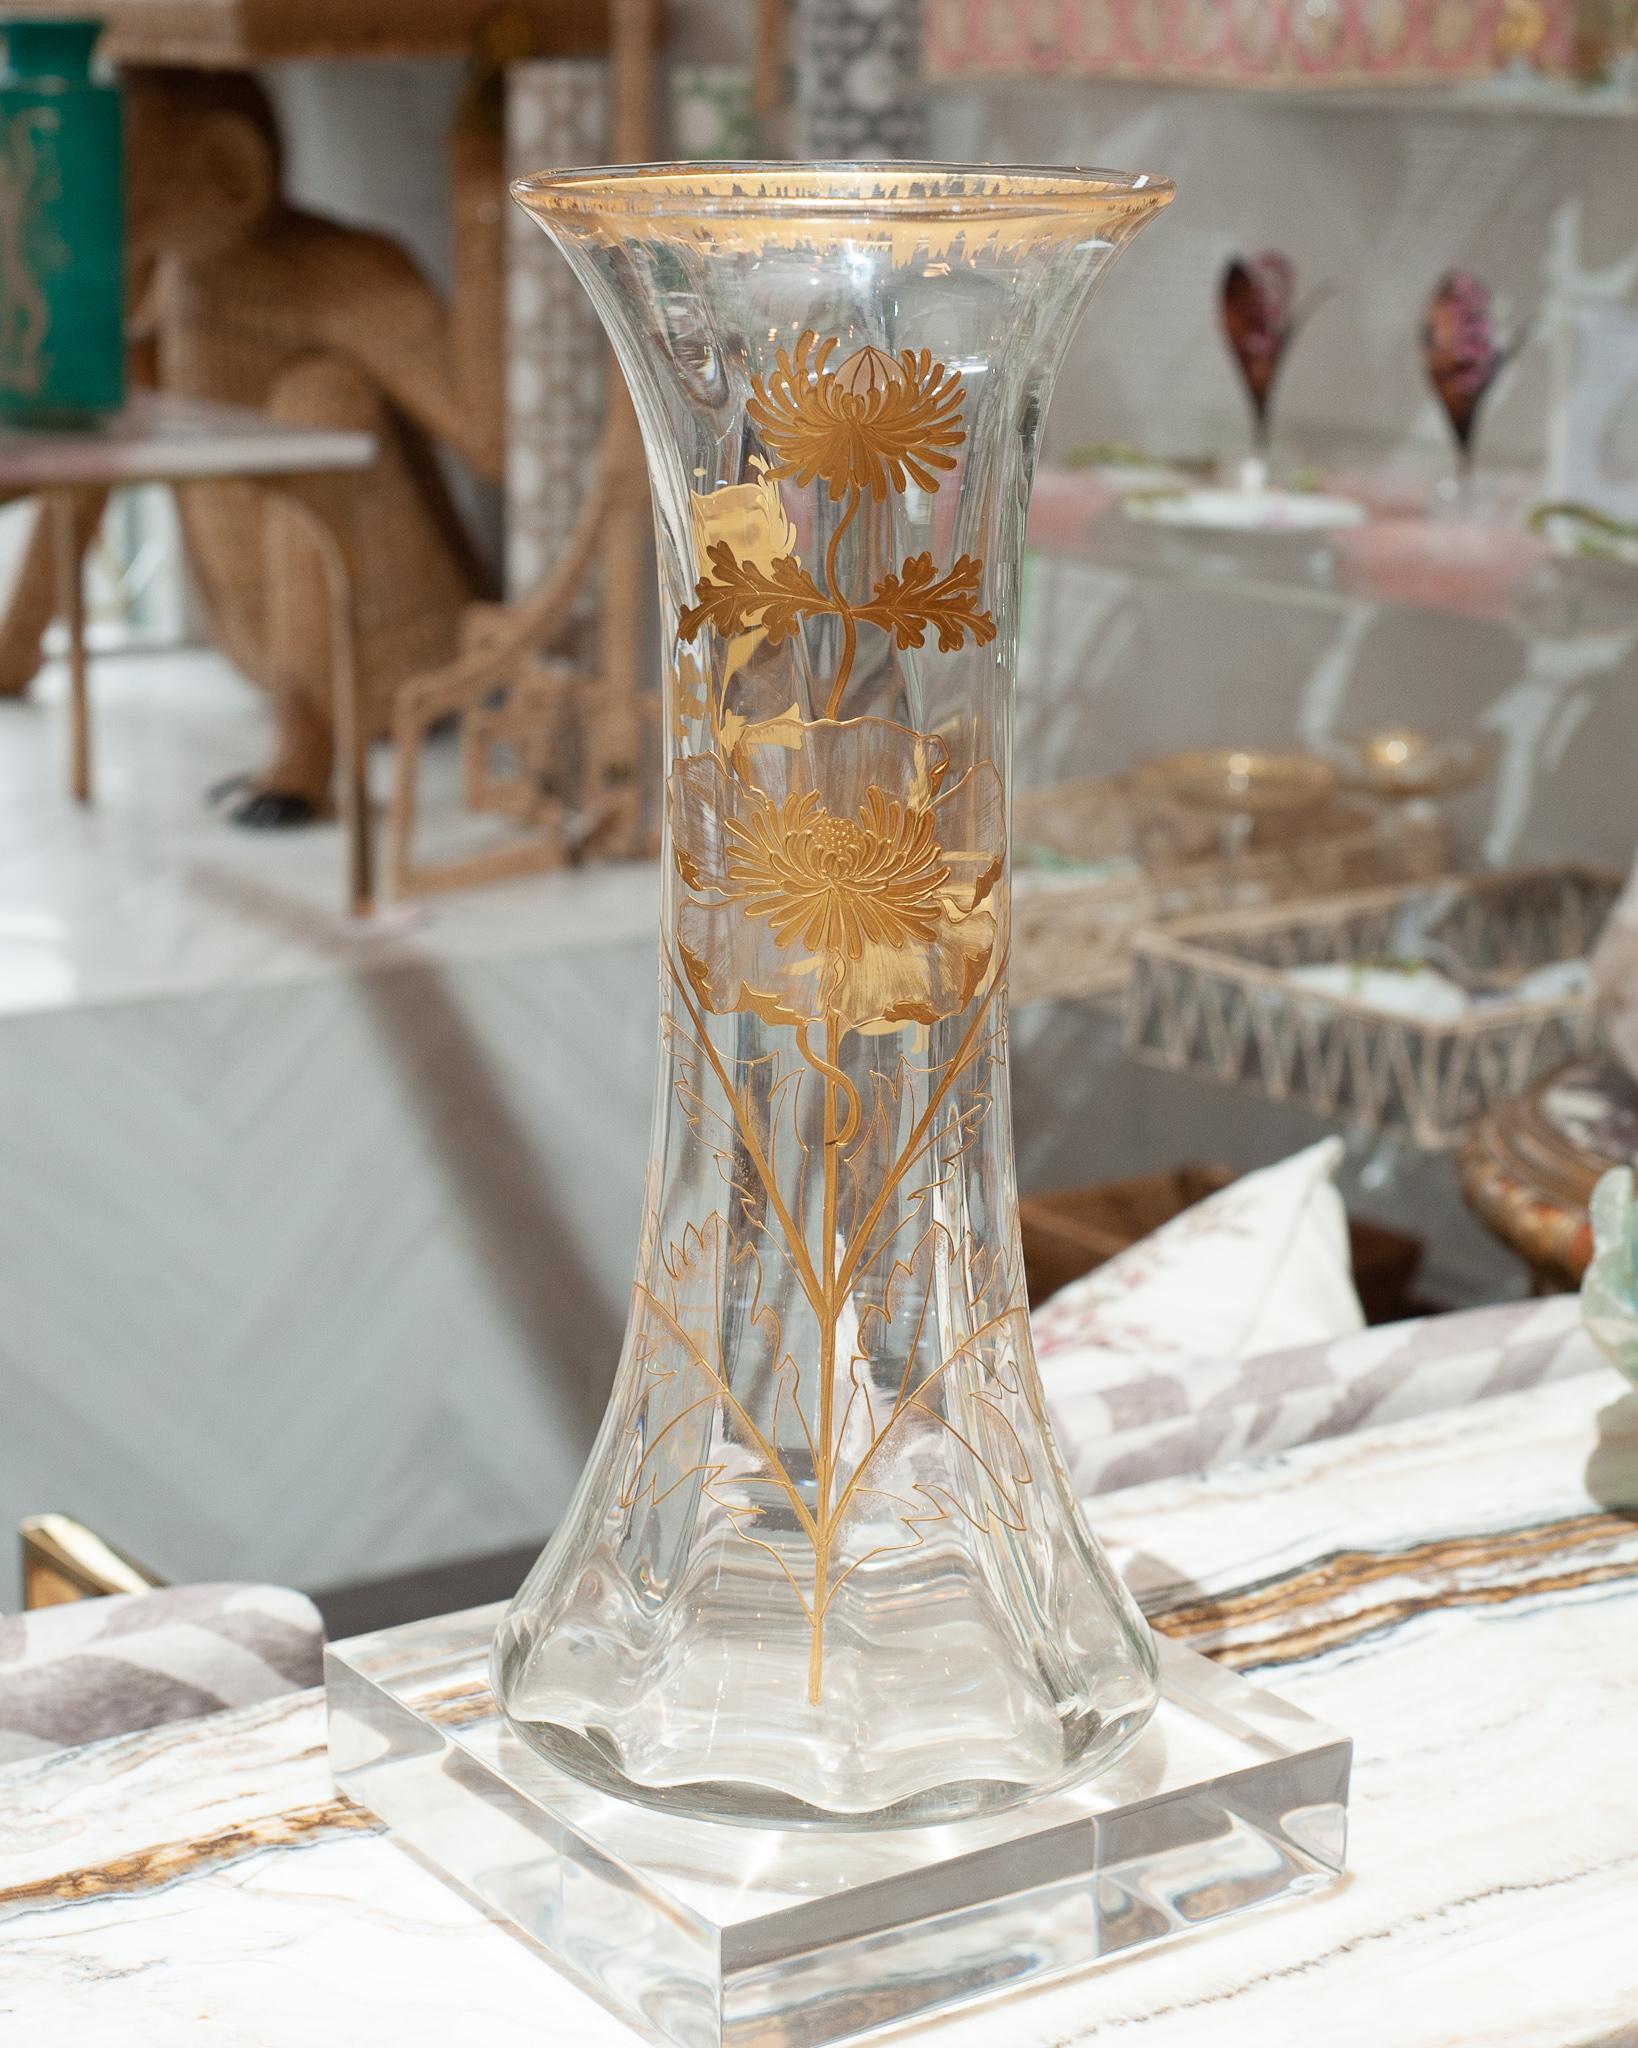 Un beau grand vase en verre français ancien, orné de fleurs et de feuilles dorées. Une belle pièce de grande taille pour toute table ou console. Usure mineure de la dorure correspondant à l'âge et à l'utilisation.